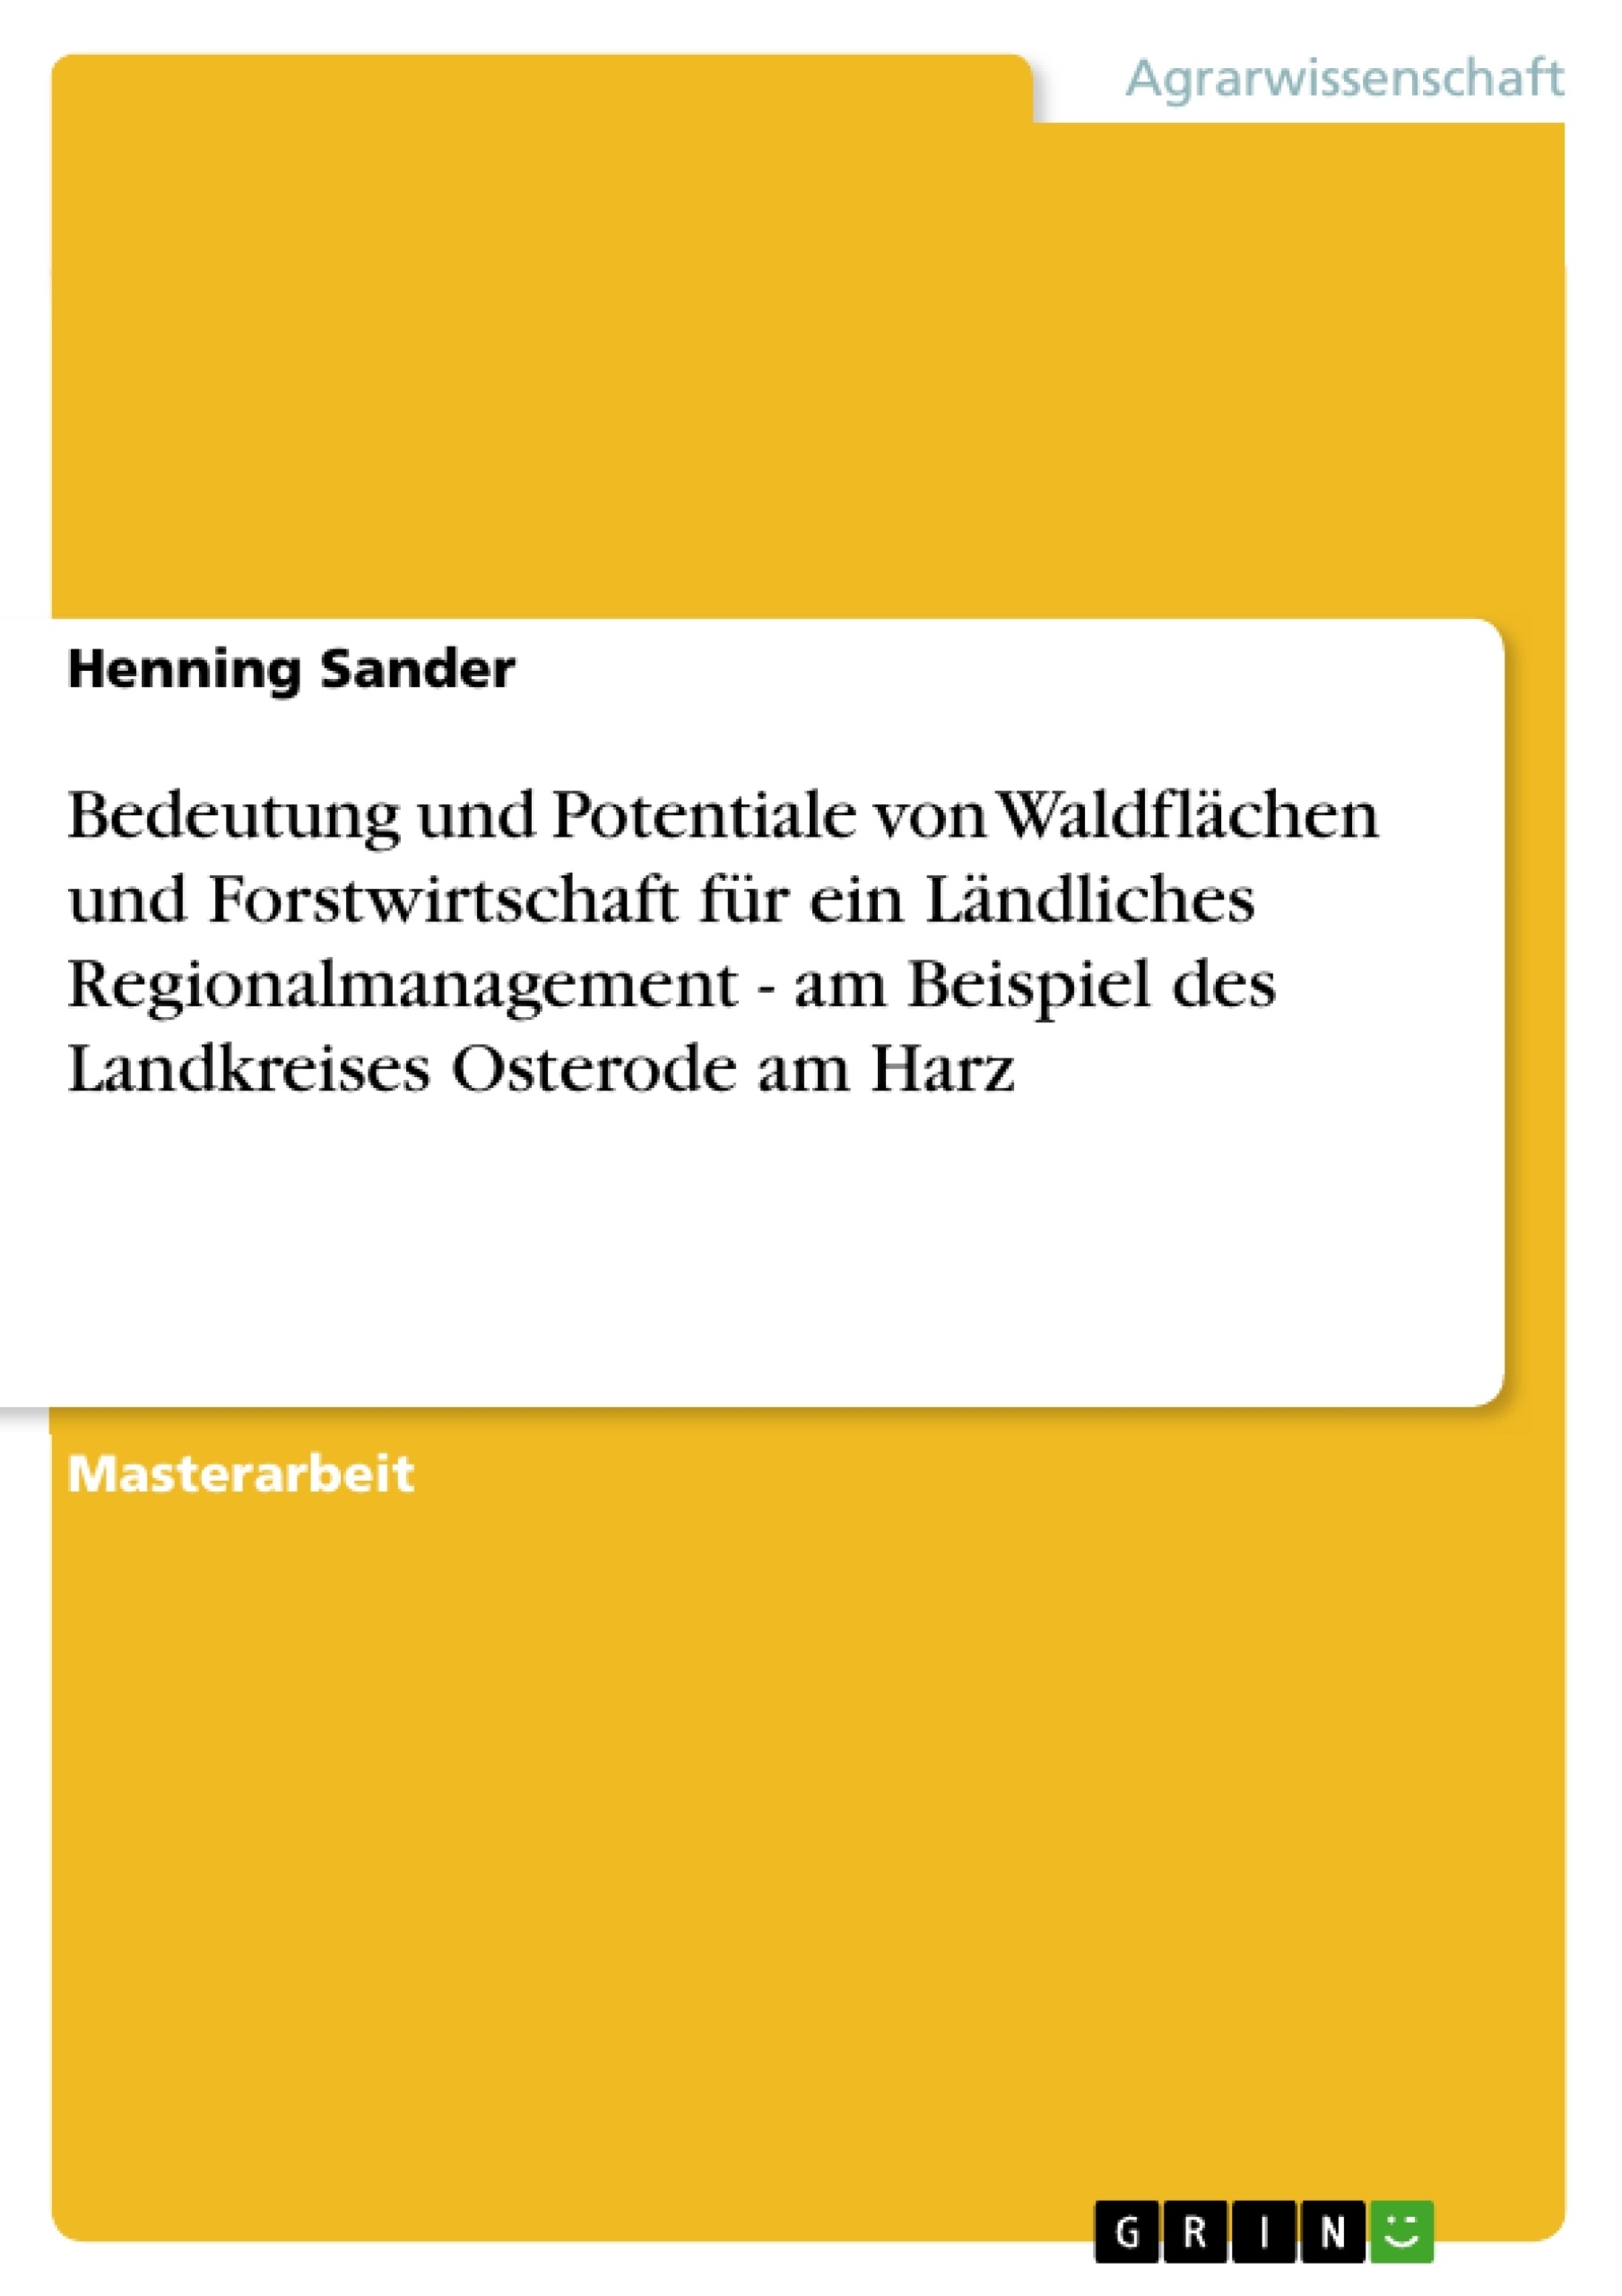 Title: Bedeutung und Potentiale von Waldflächen und Forstwirtschaft für ein Ländliches Regionalmanagement - am Beispiel des Landkreises Osterode am Harz